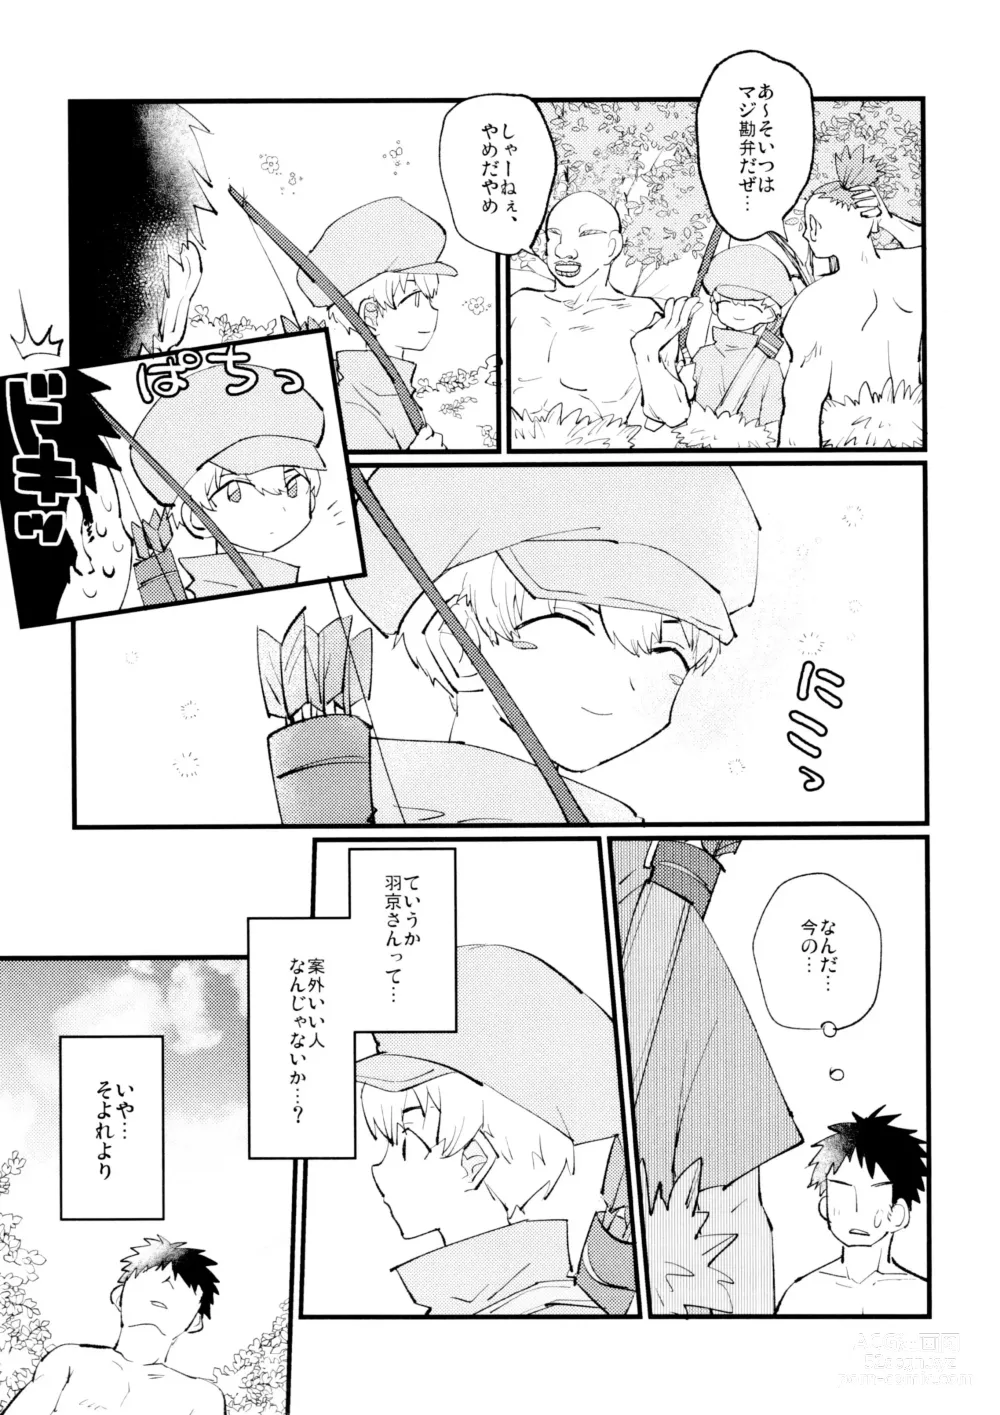 Page 12 of doujinshi Yasashii Kawaii Ore no Tenshi Ukyo-san